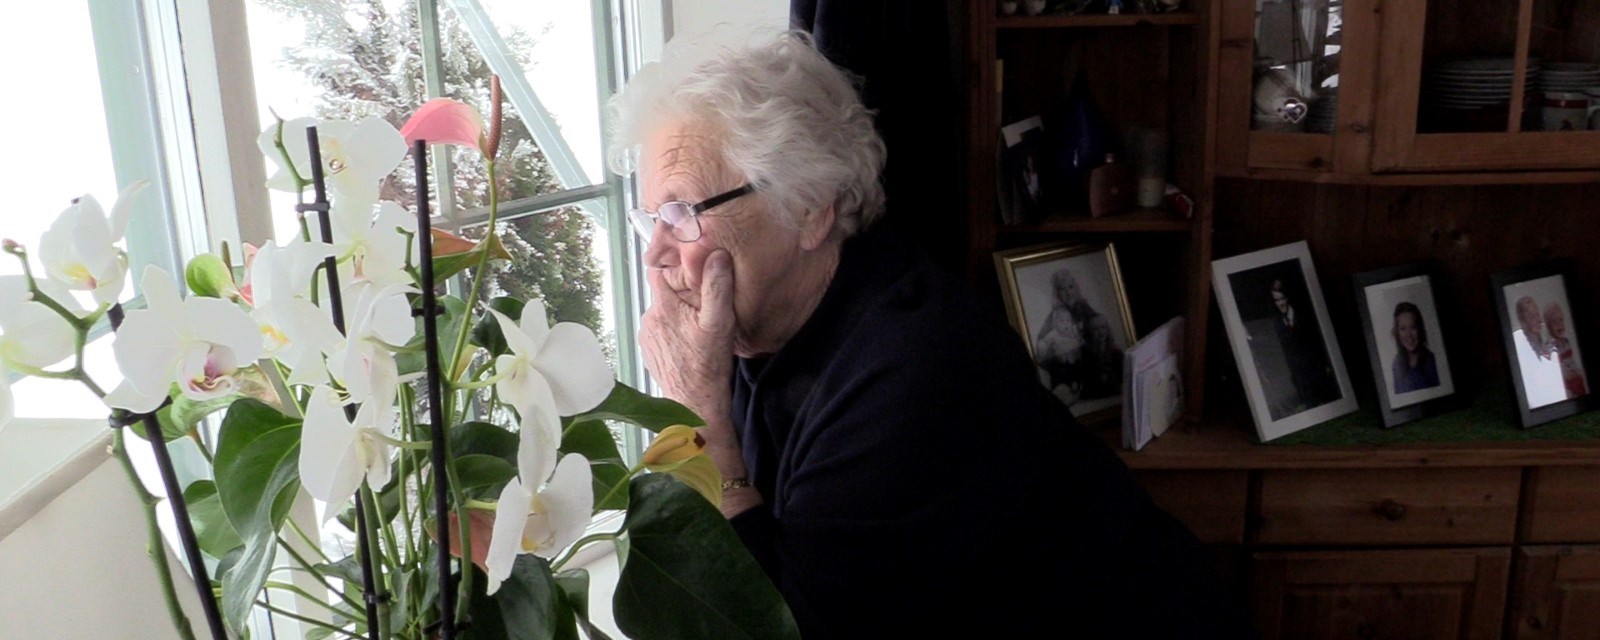 En eldre kvinne kikker ut av vinduet